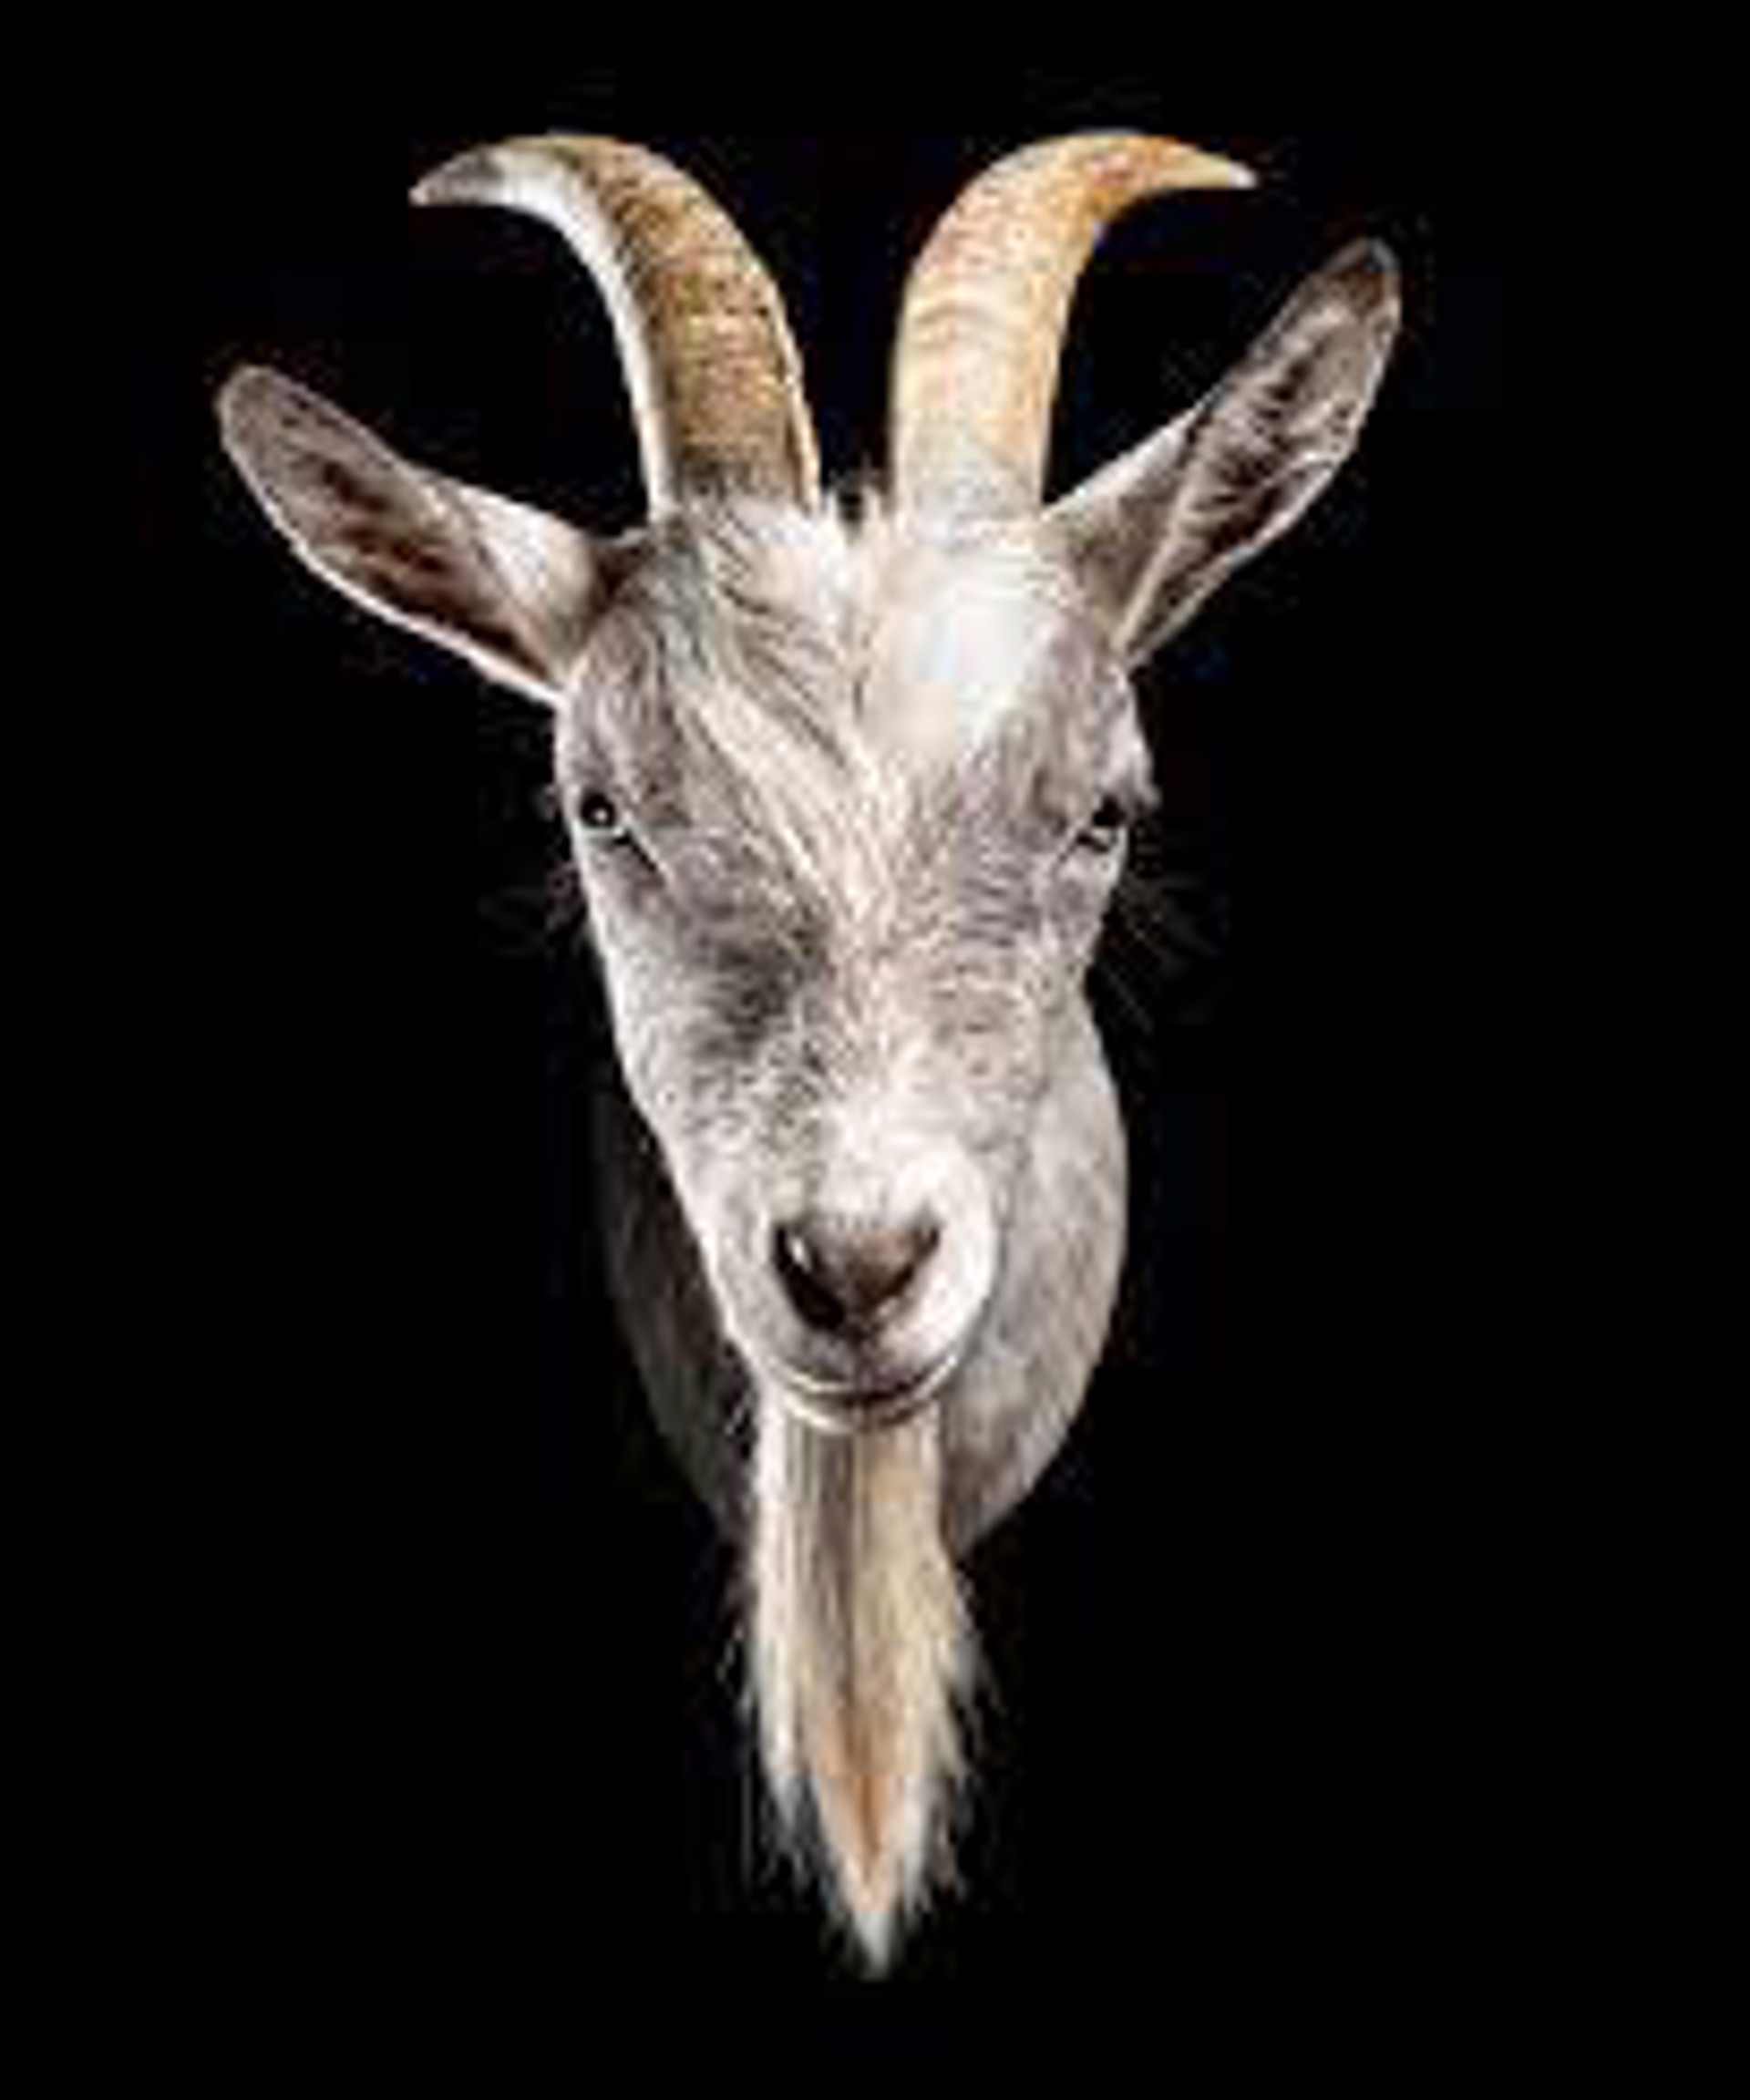 Bubba Billy ZZ Top, Nigerian Dwarf Goat by Evan Kafka